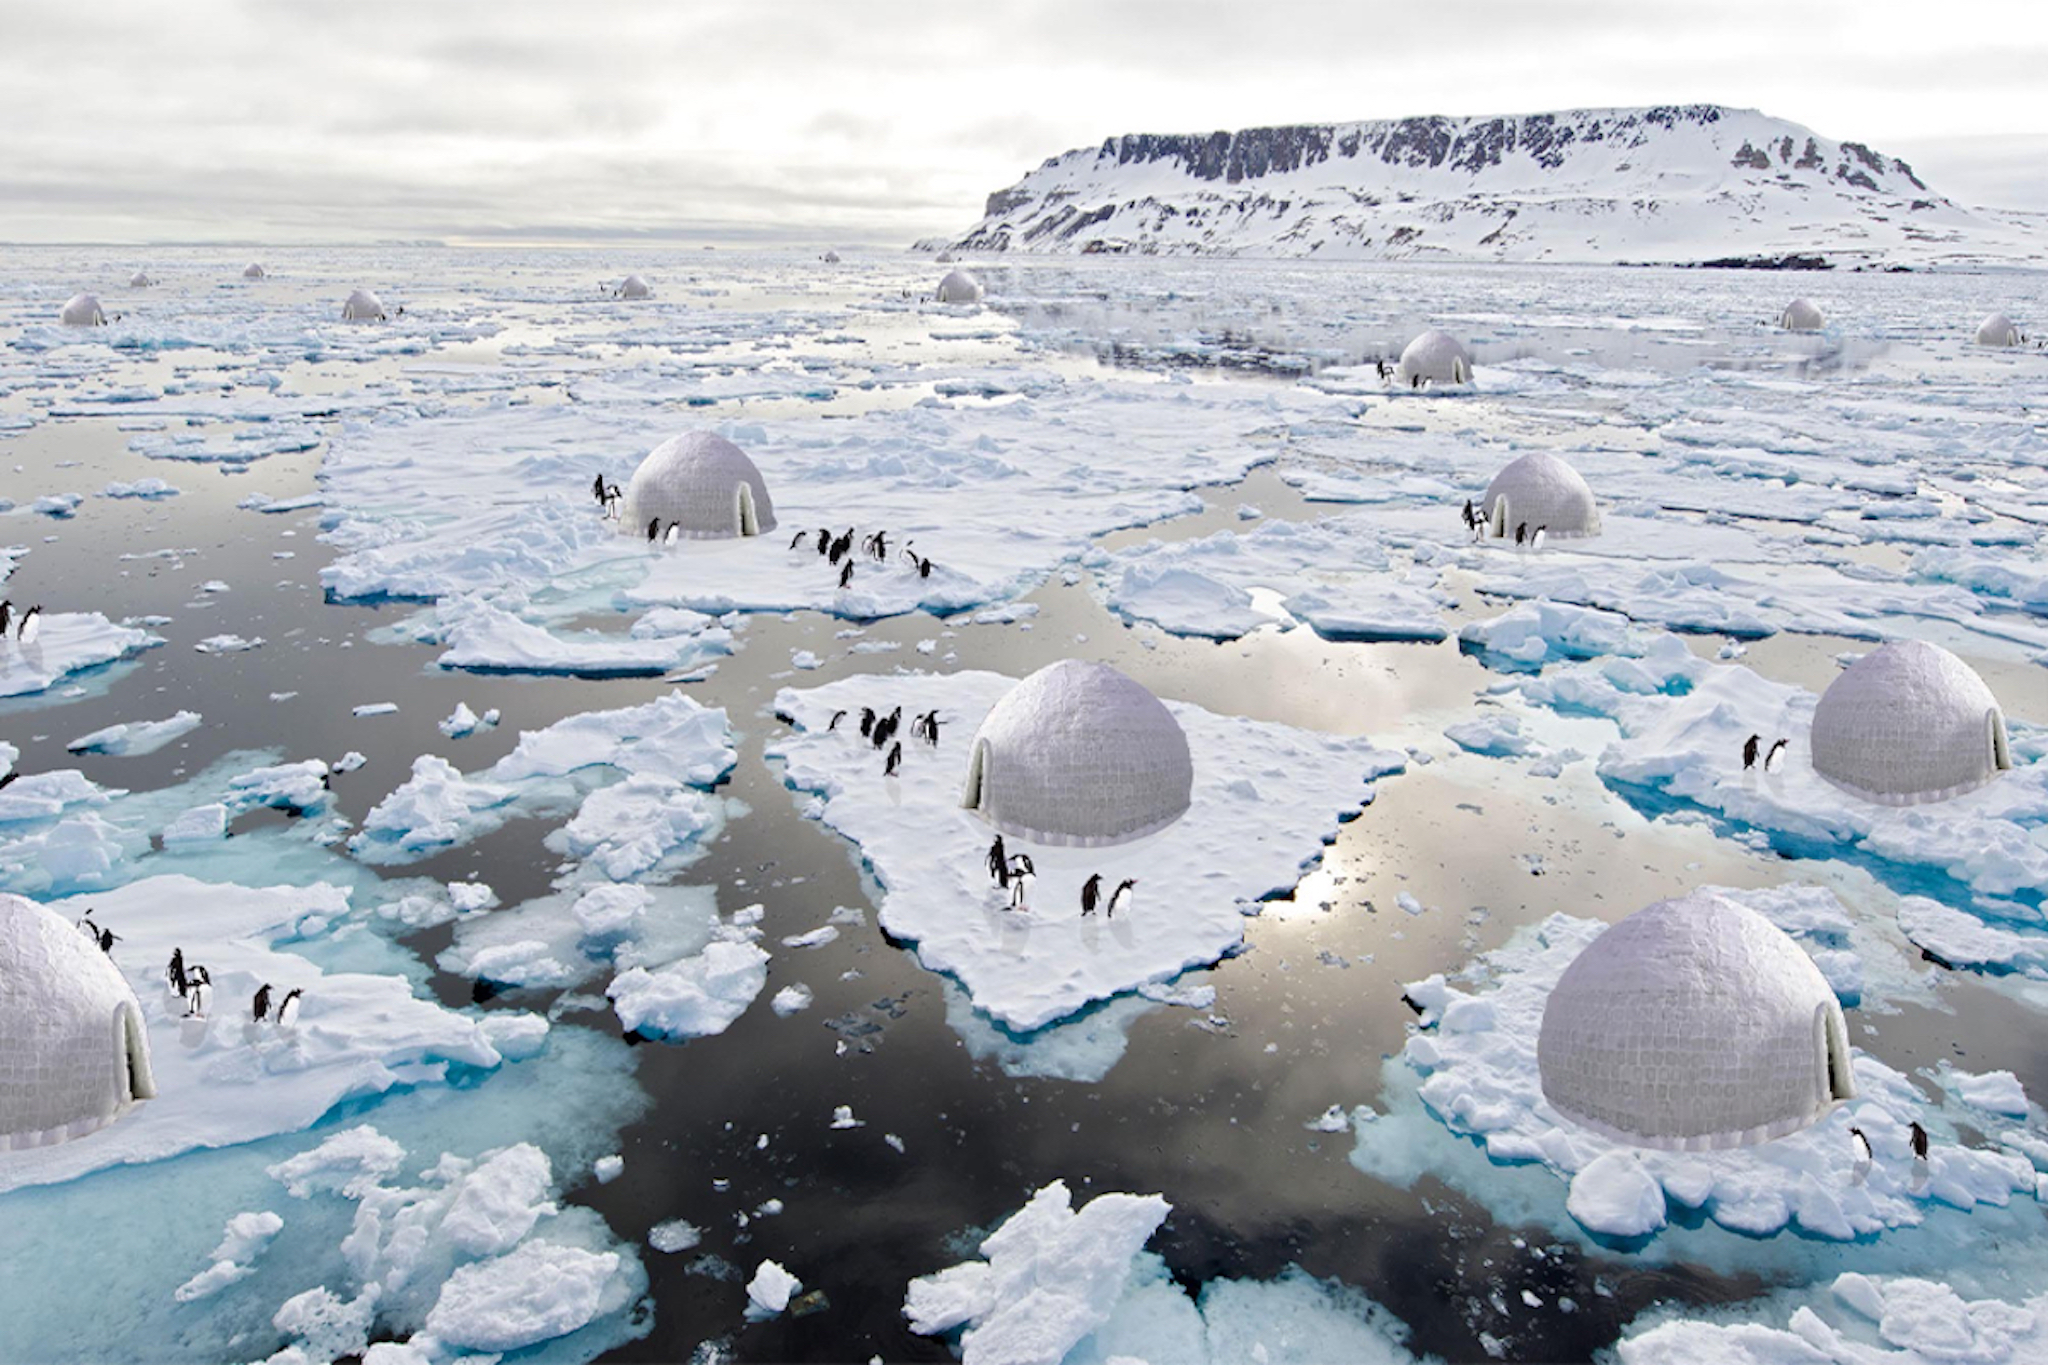 Dự án khoa học khủng tìm cách ngăn chặn băng tan ở Nam Cực  Báo Công an  Nhân dân điện tử